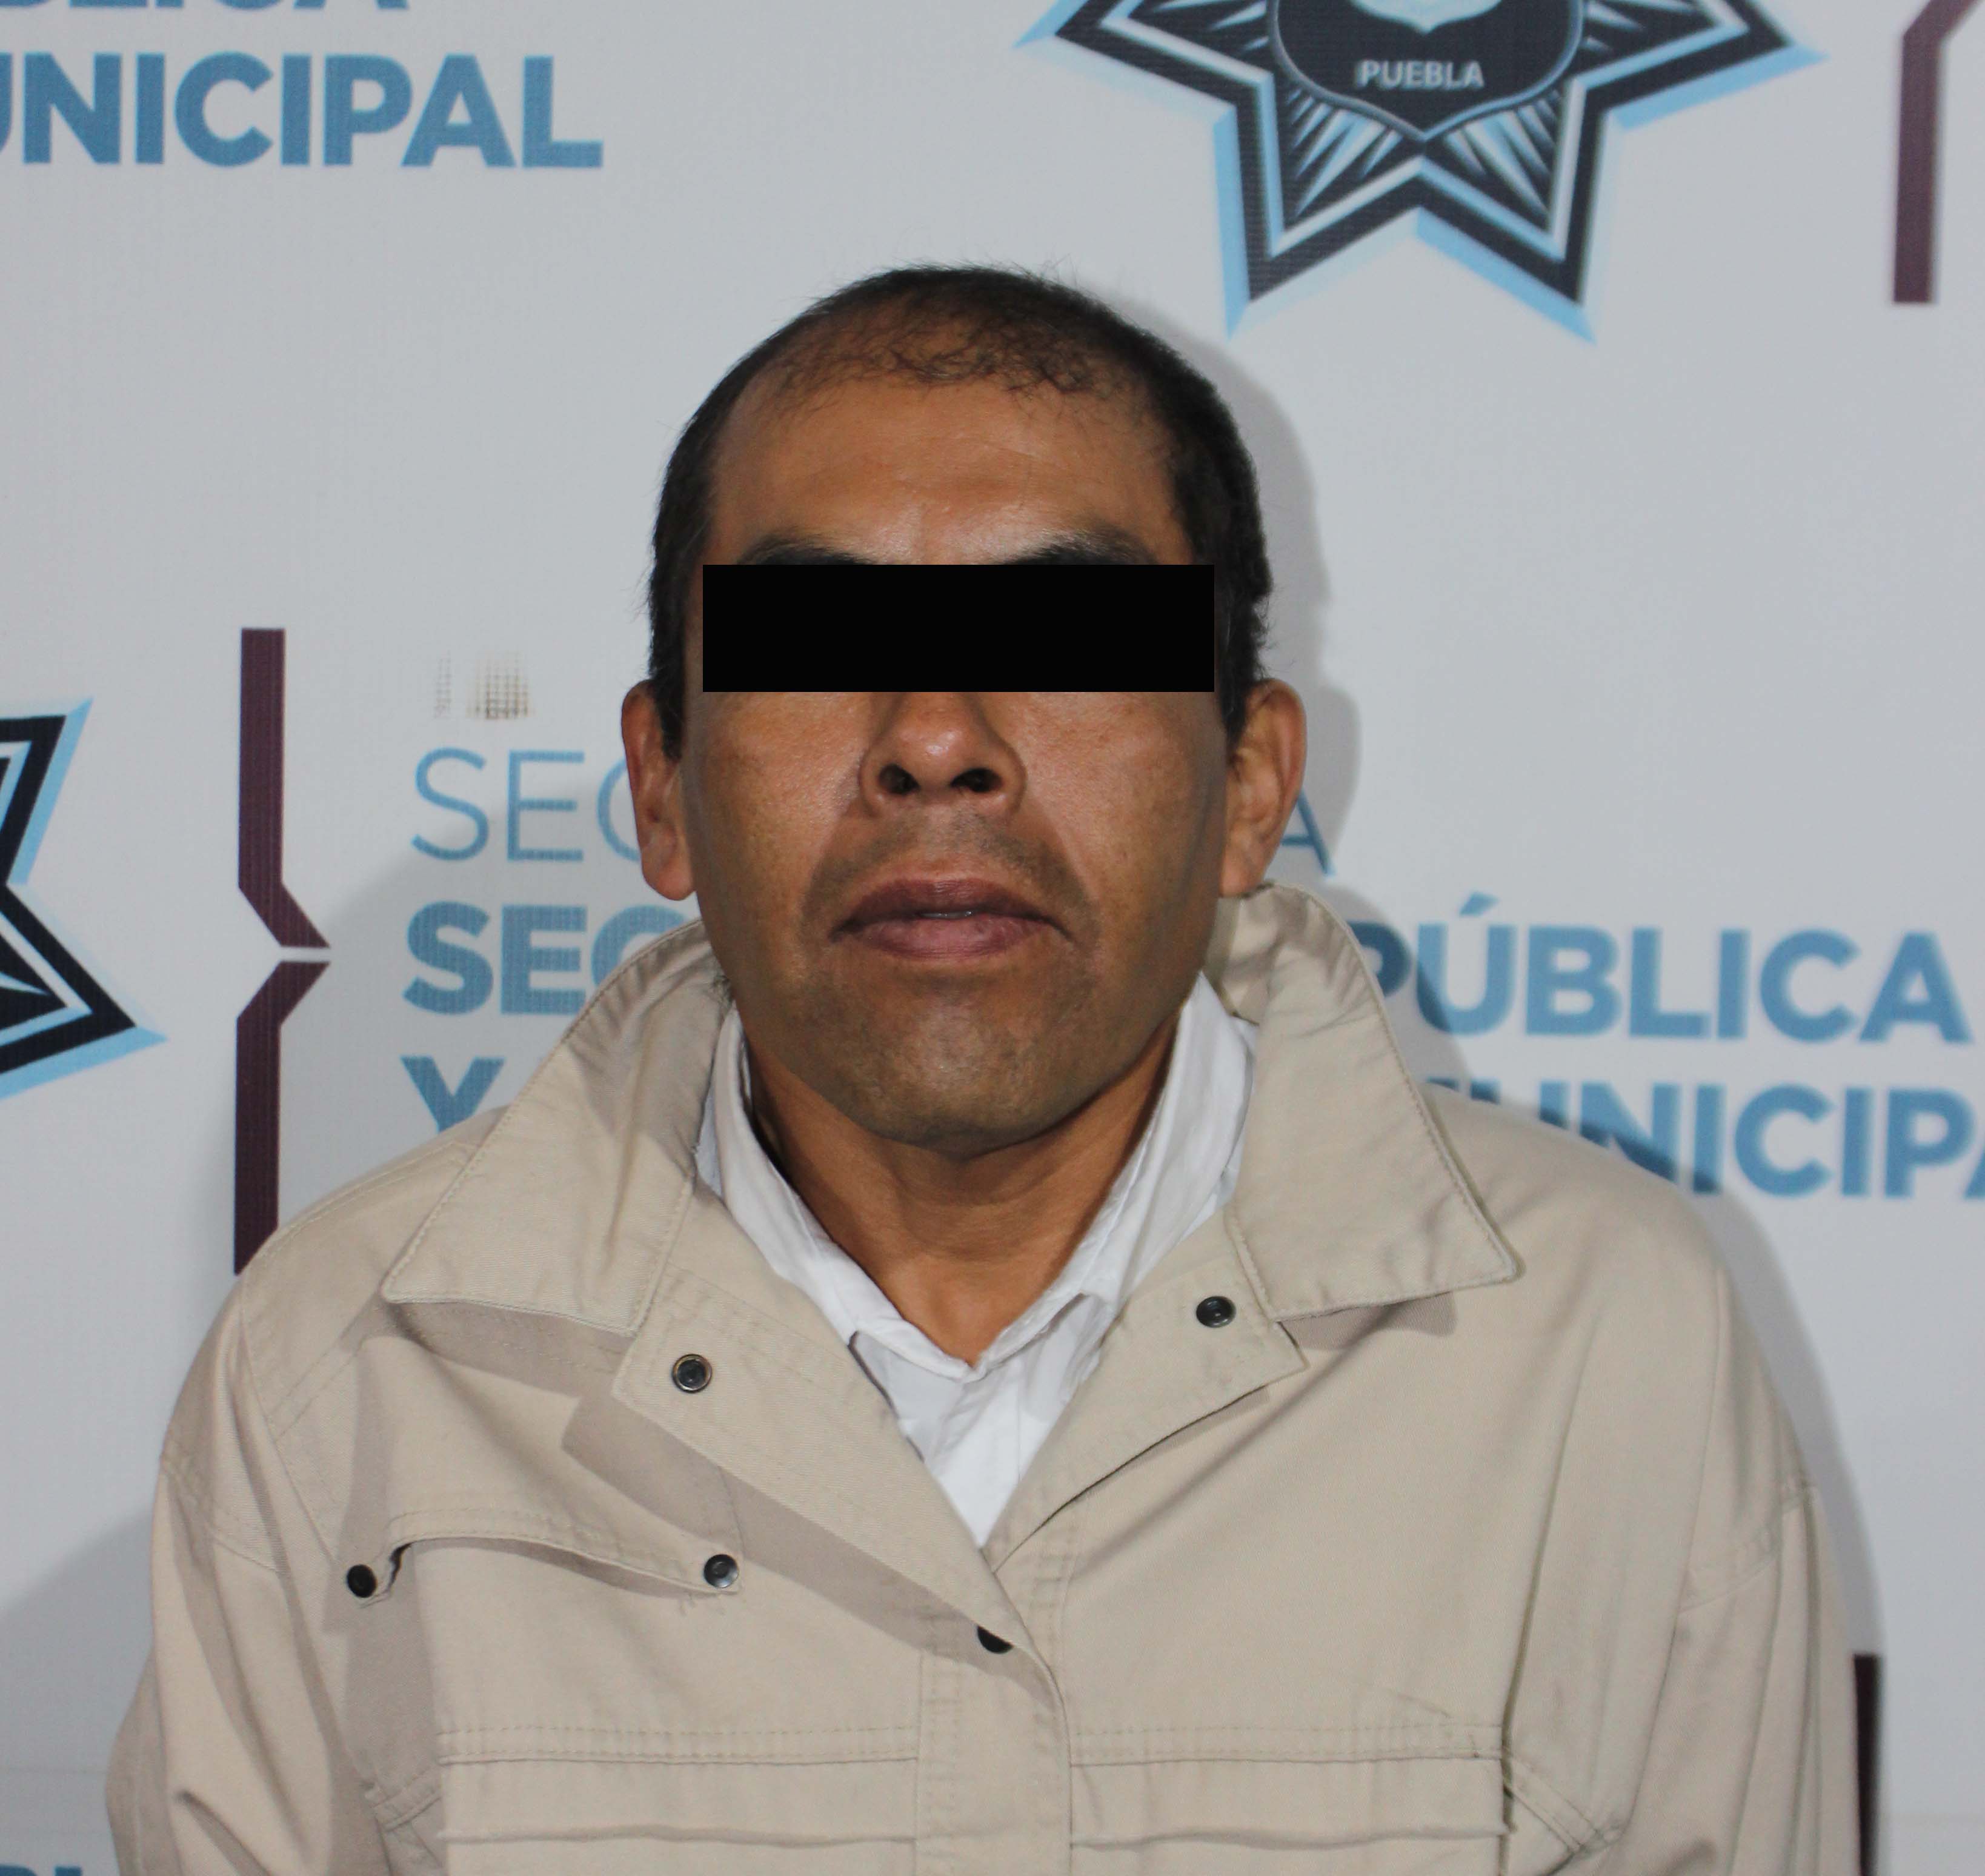 Resultados contundentes! Detuvo SSC de Puebla a cinco probables narcomenudistas.